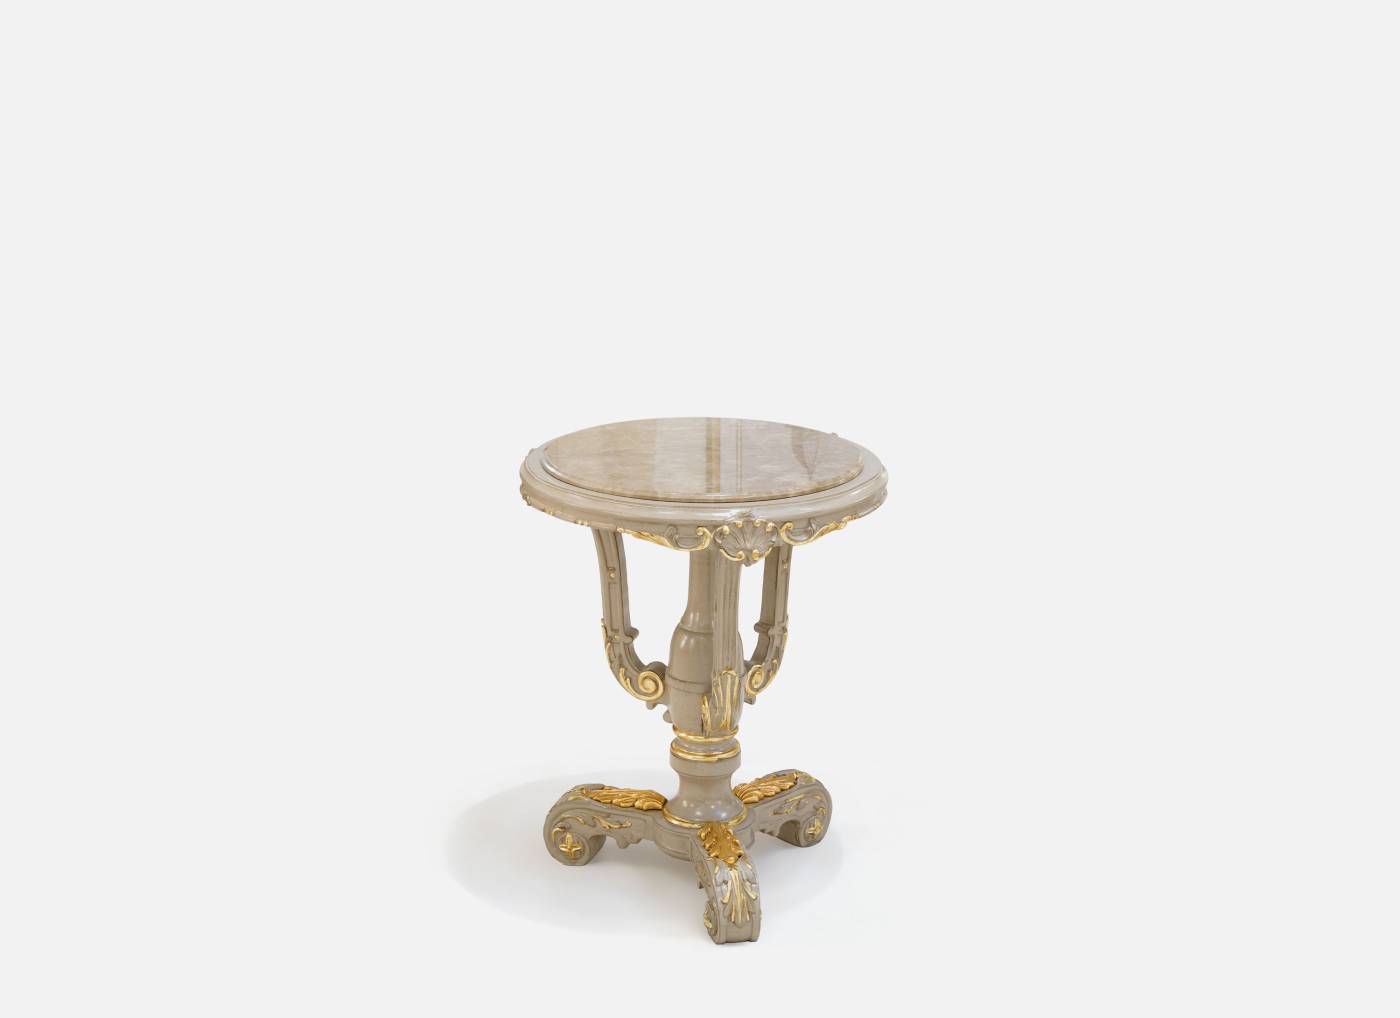 ART. 663-1 – C.G. Capelletti Italian Luxury Classic Small tables. Made in Italy classic interior design